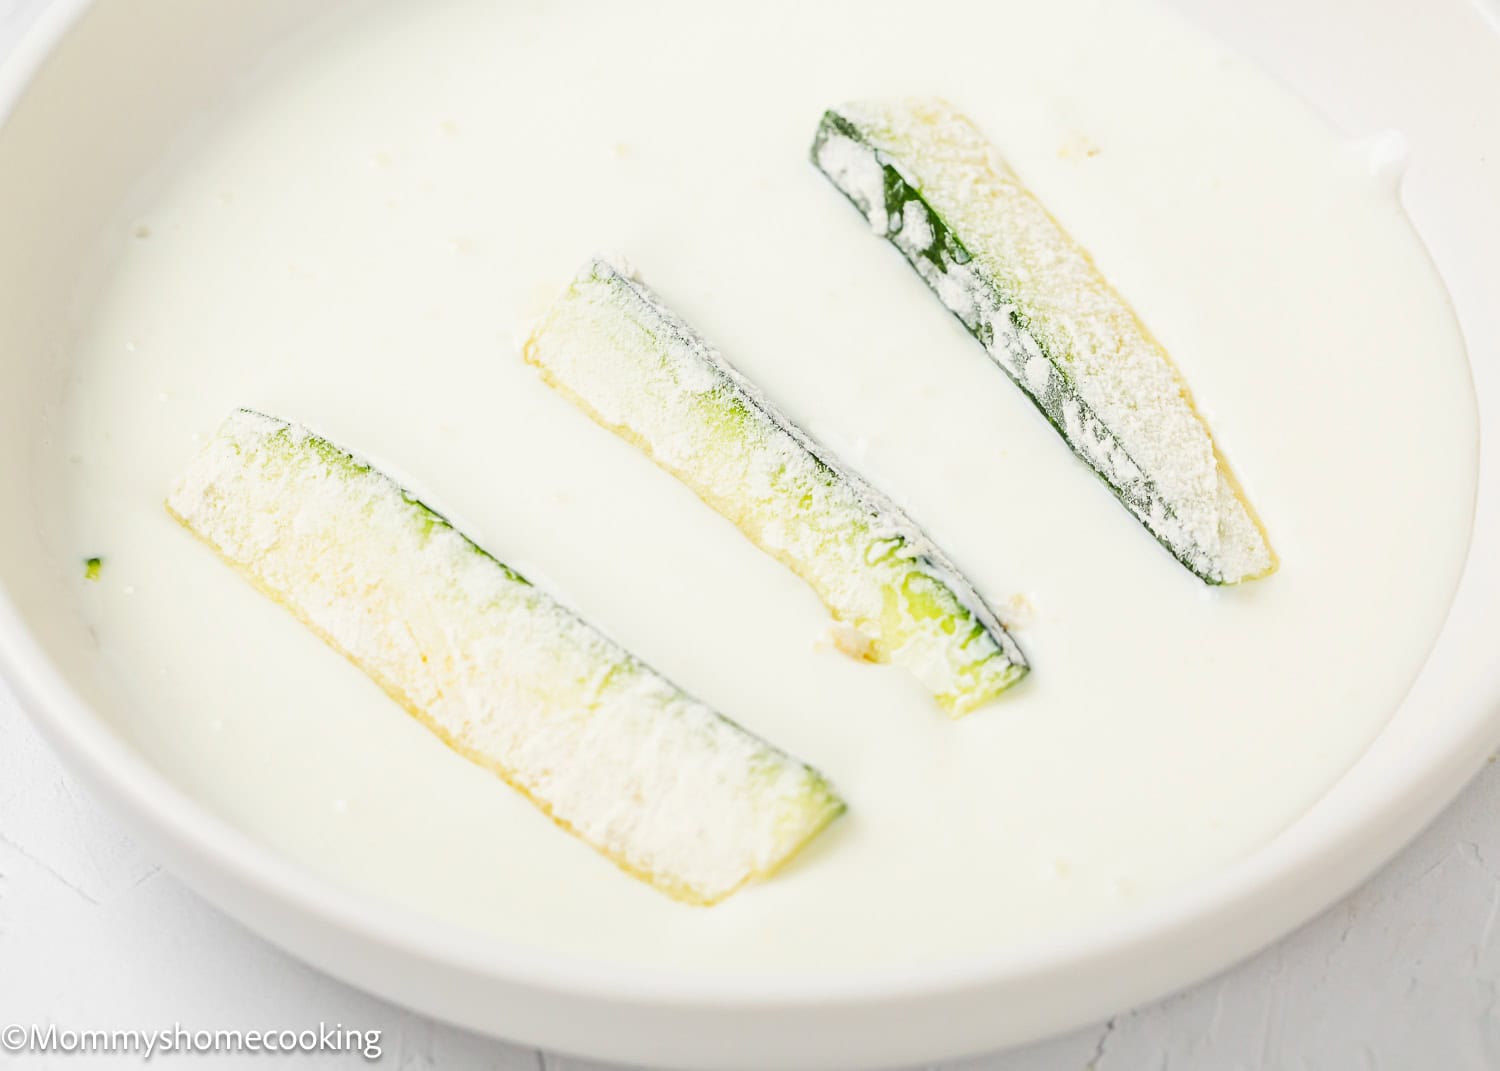 Zucchini sticks dipped in a yogurt mixture to make Eggless Zucchini Fries in a bowl.